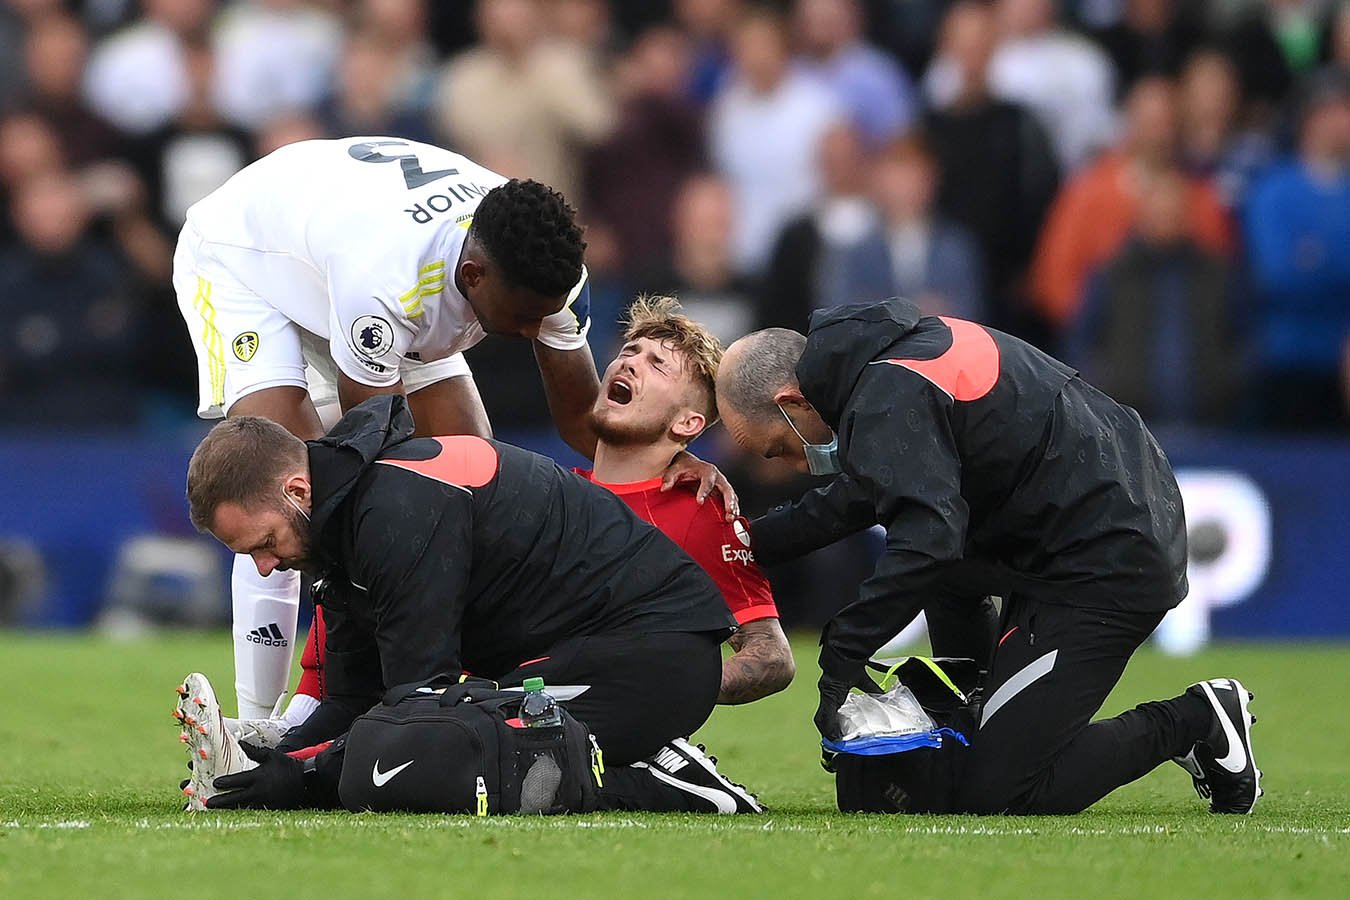 25 игроков подали в суд на футбольную ассоциацию Англии из-за черепно-мозговых травм